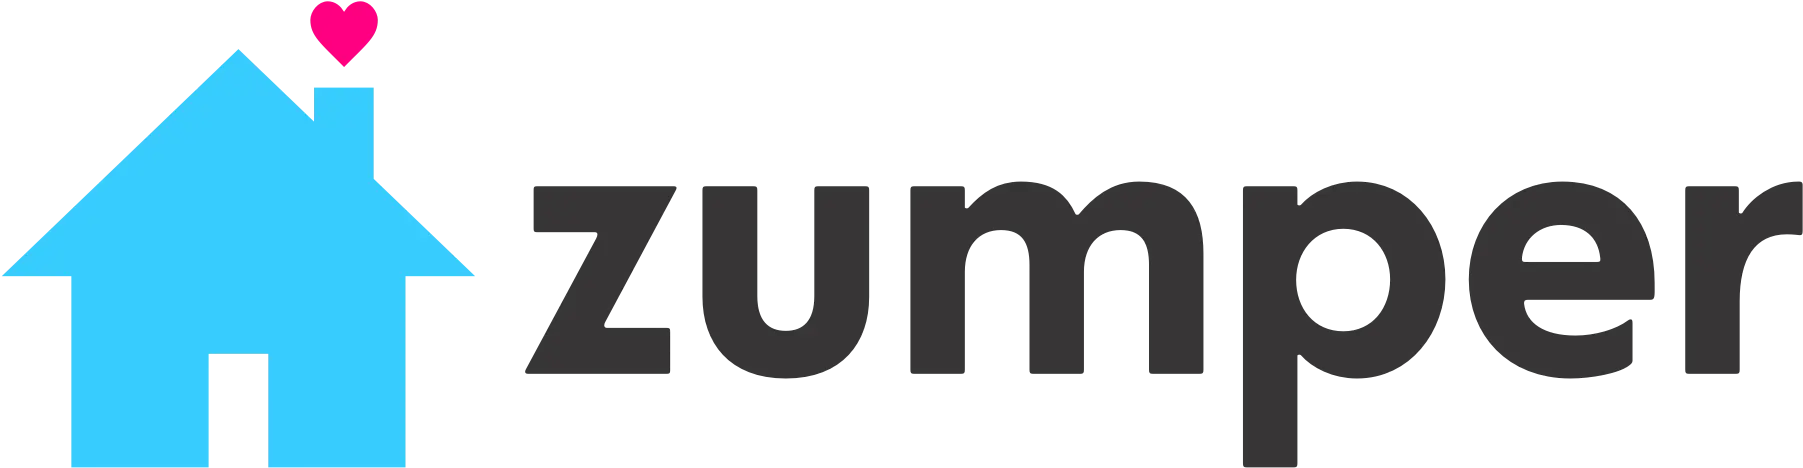 Zumper.com lists vacancies for rentals